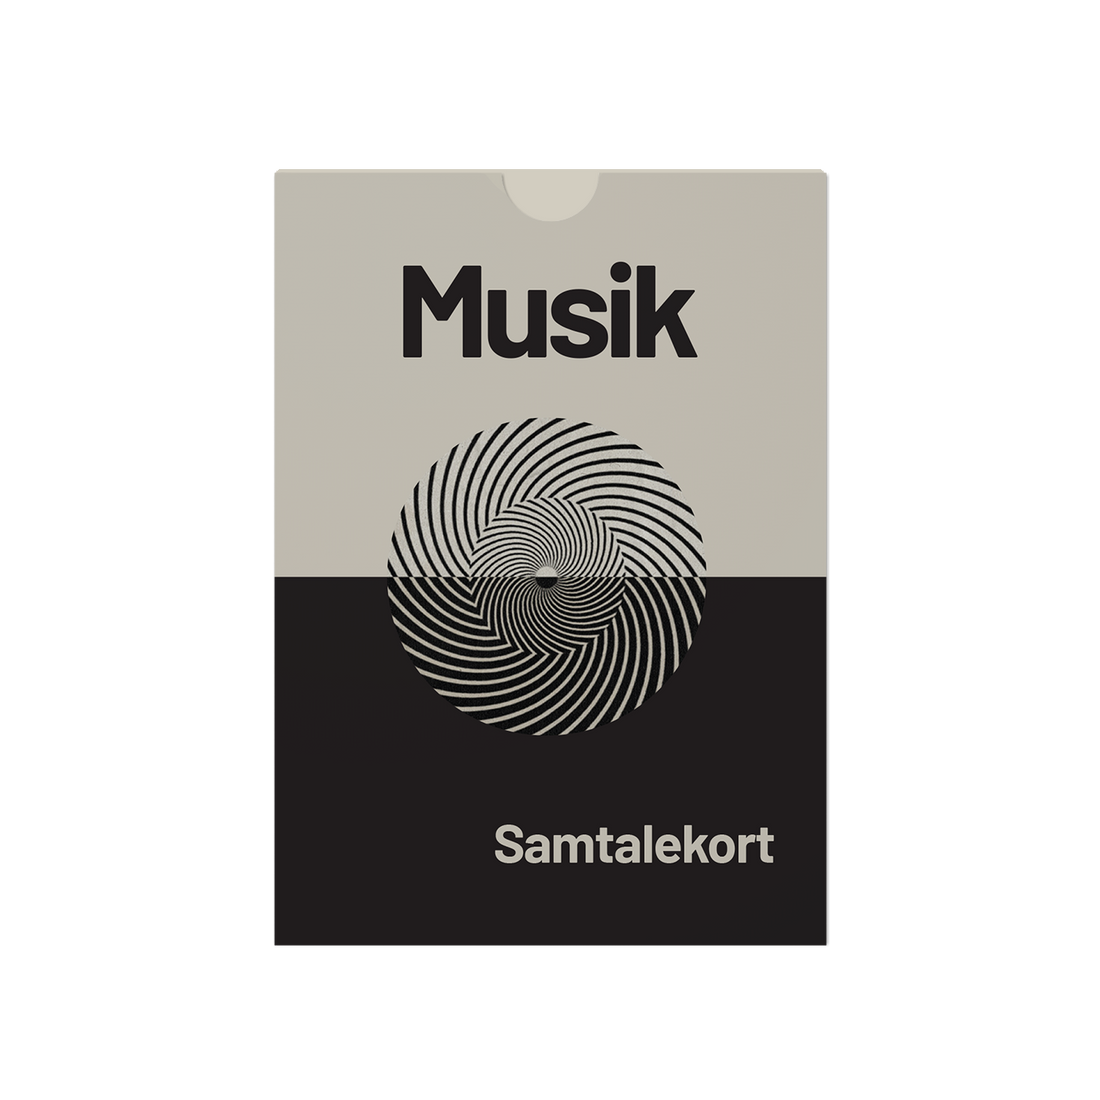 MUSIK - Samtalekort om musik.